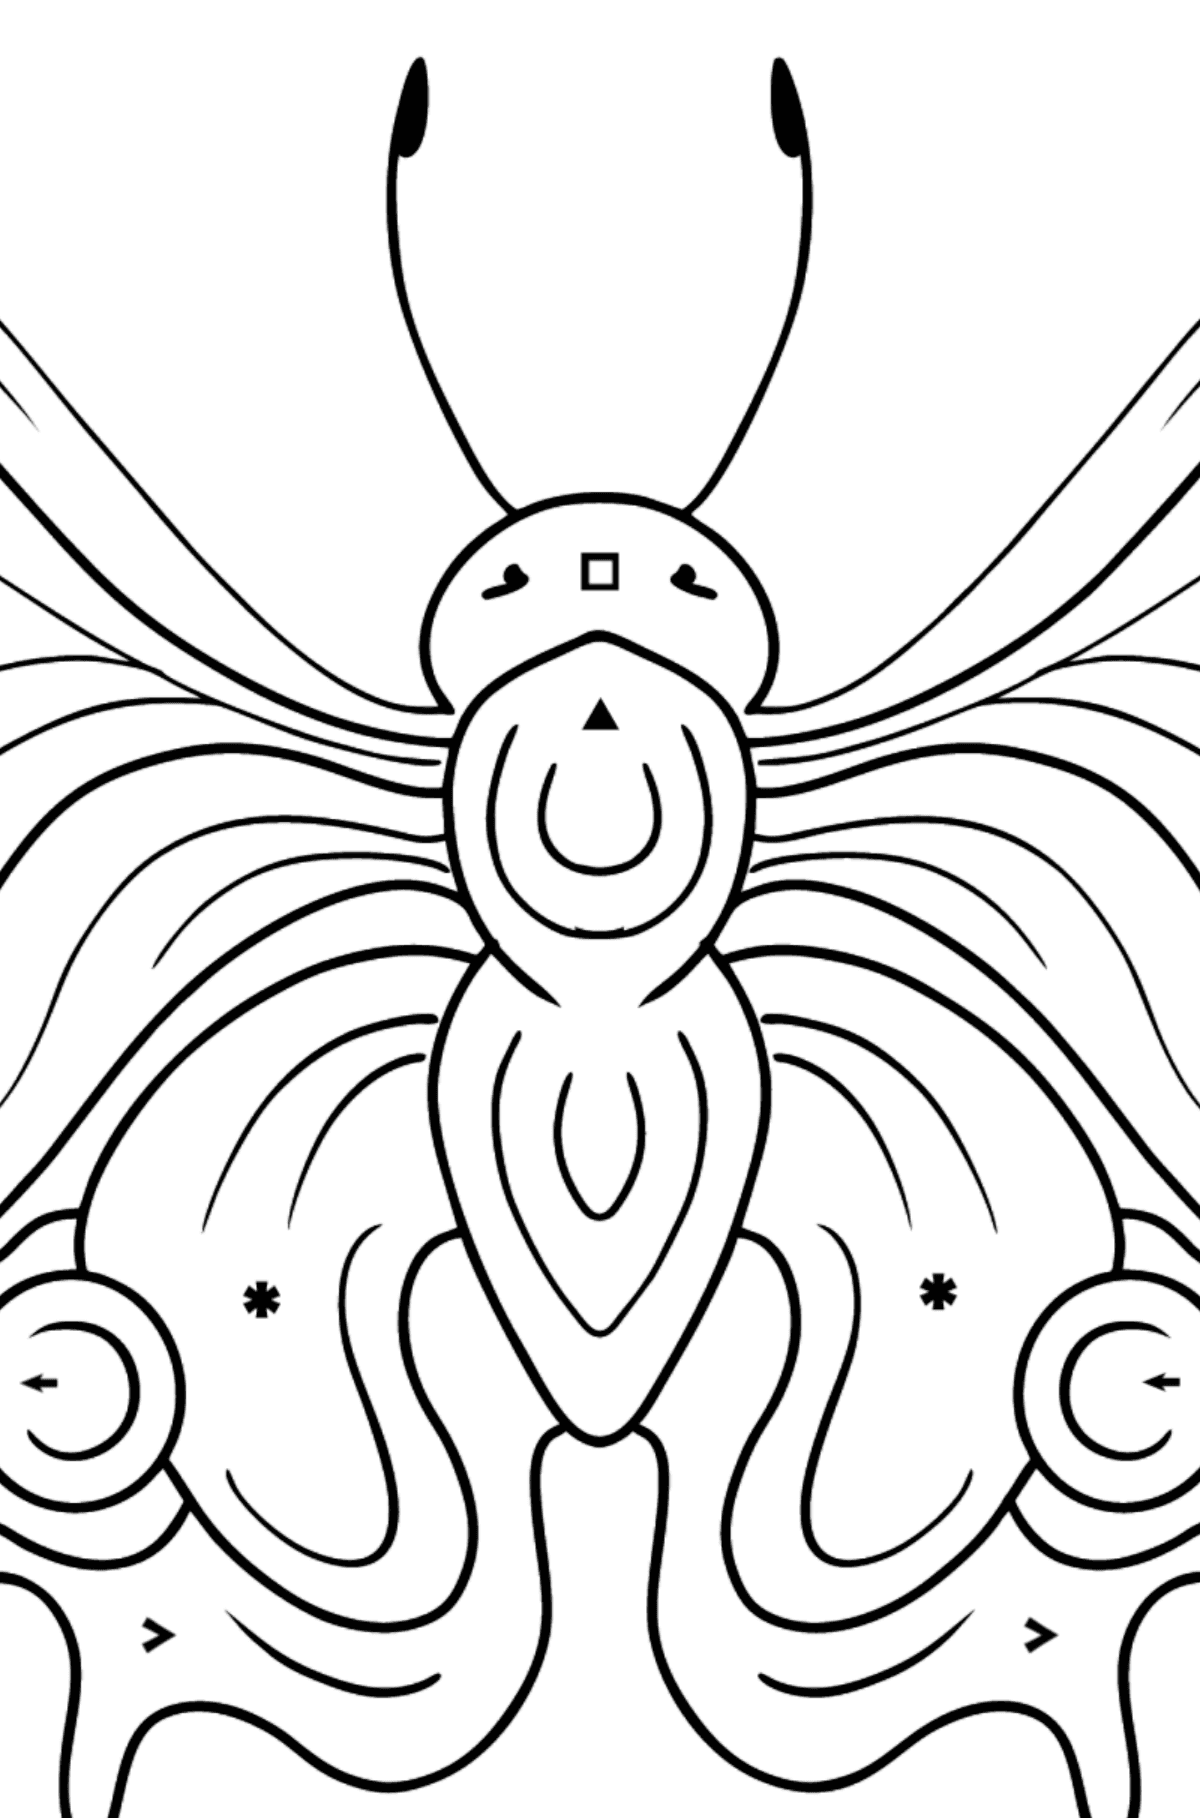 Dibujo de Mariposa pavo real para colorear - Colorear por Símbolos para Niños